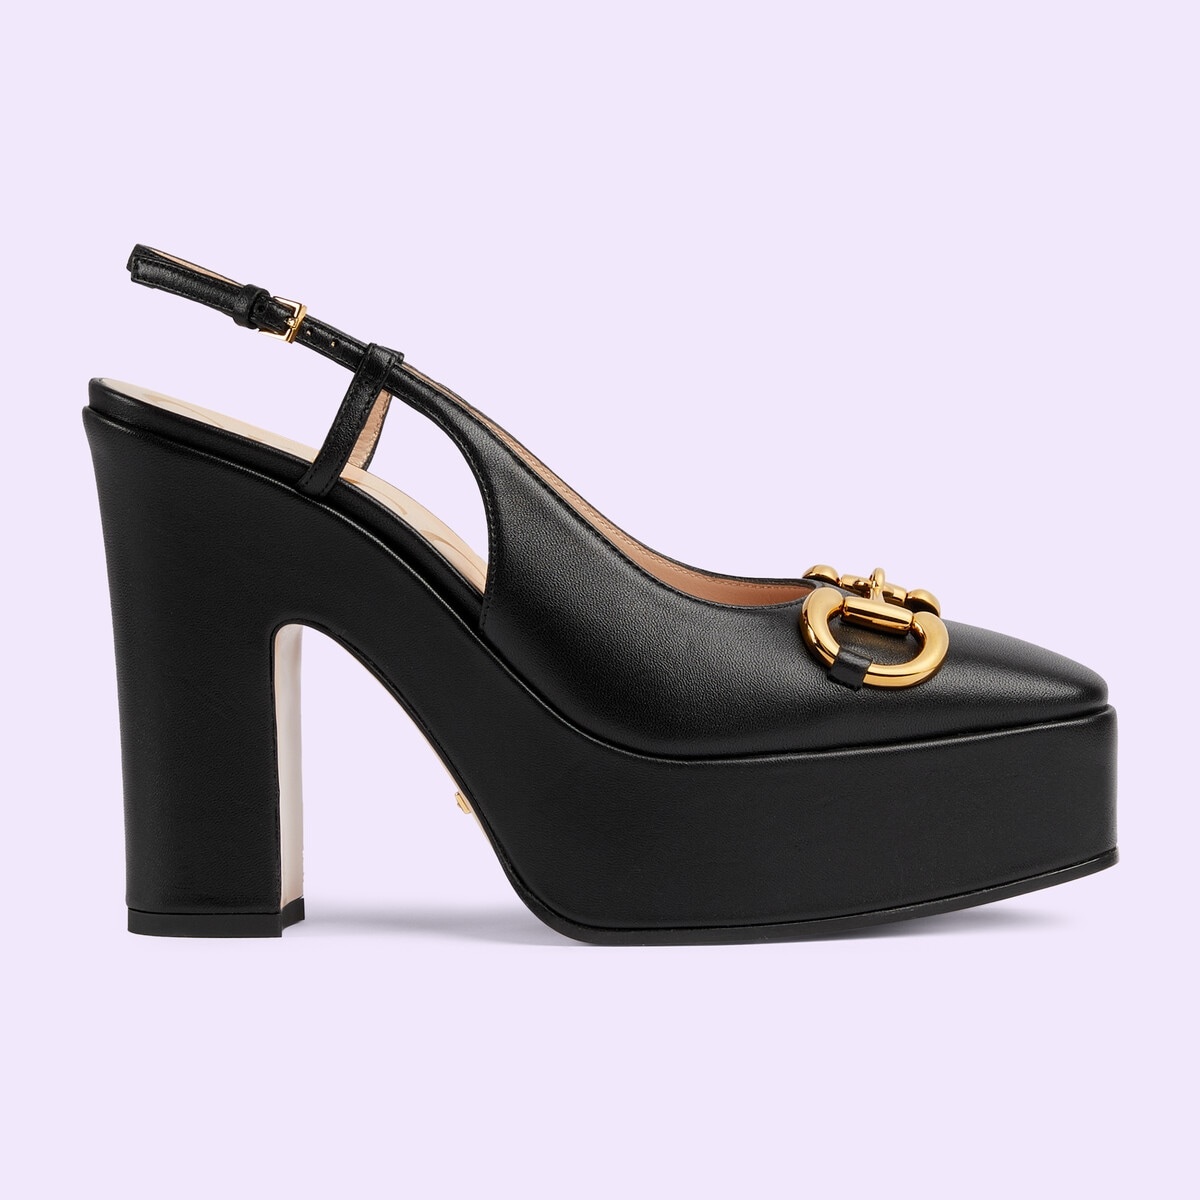 Women's high heel pump - 1